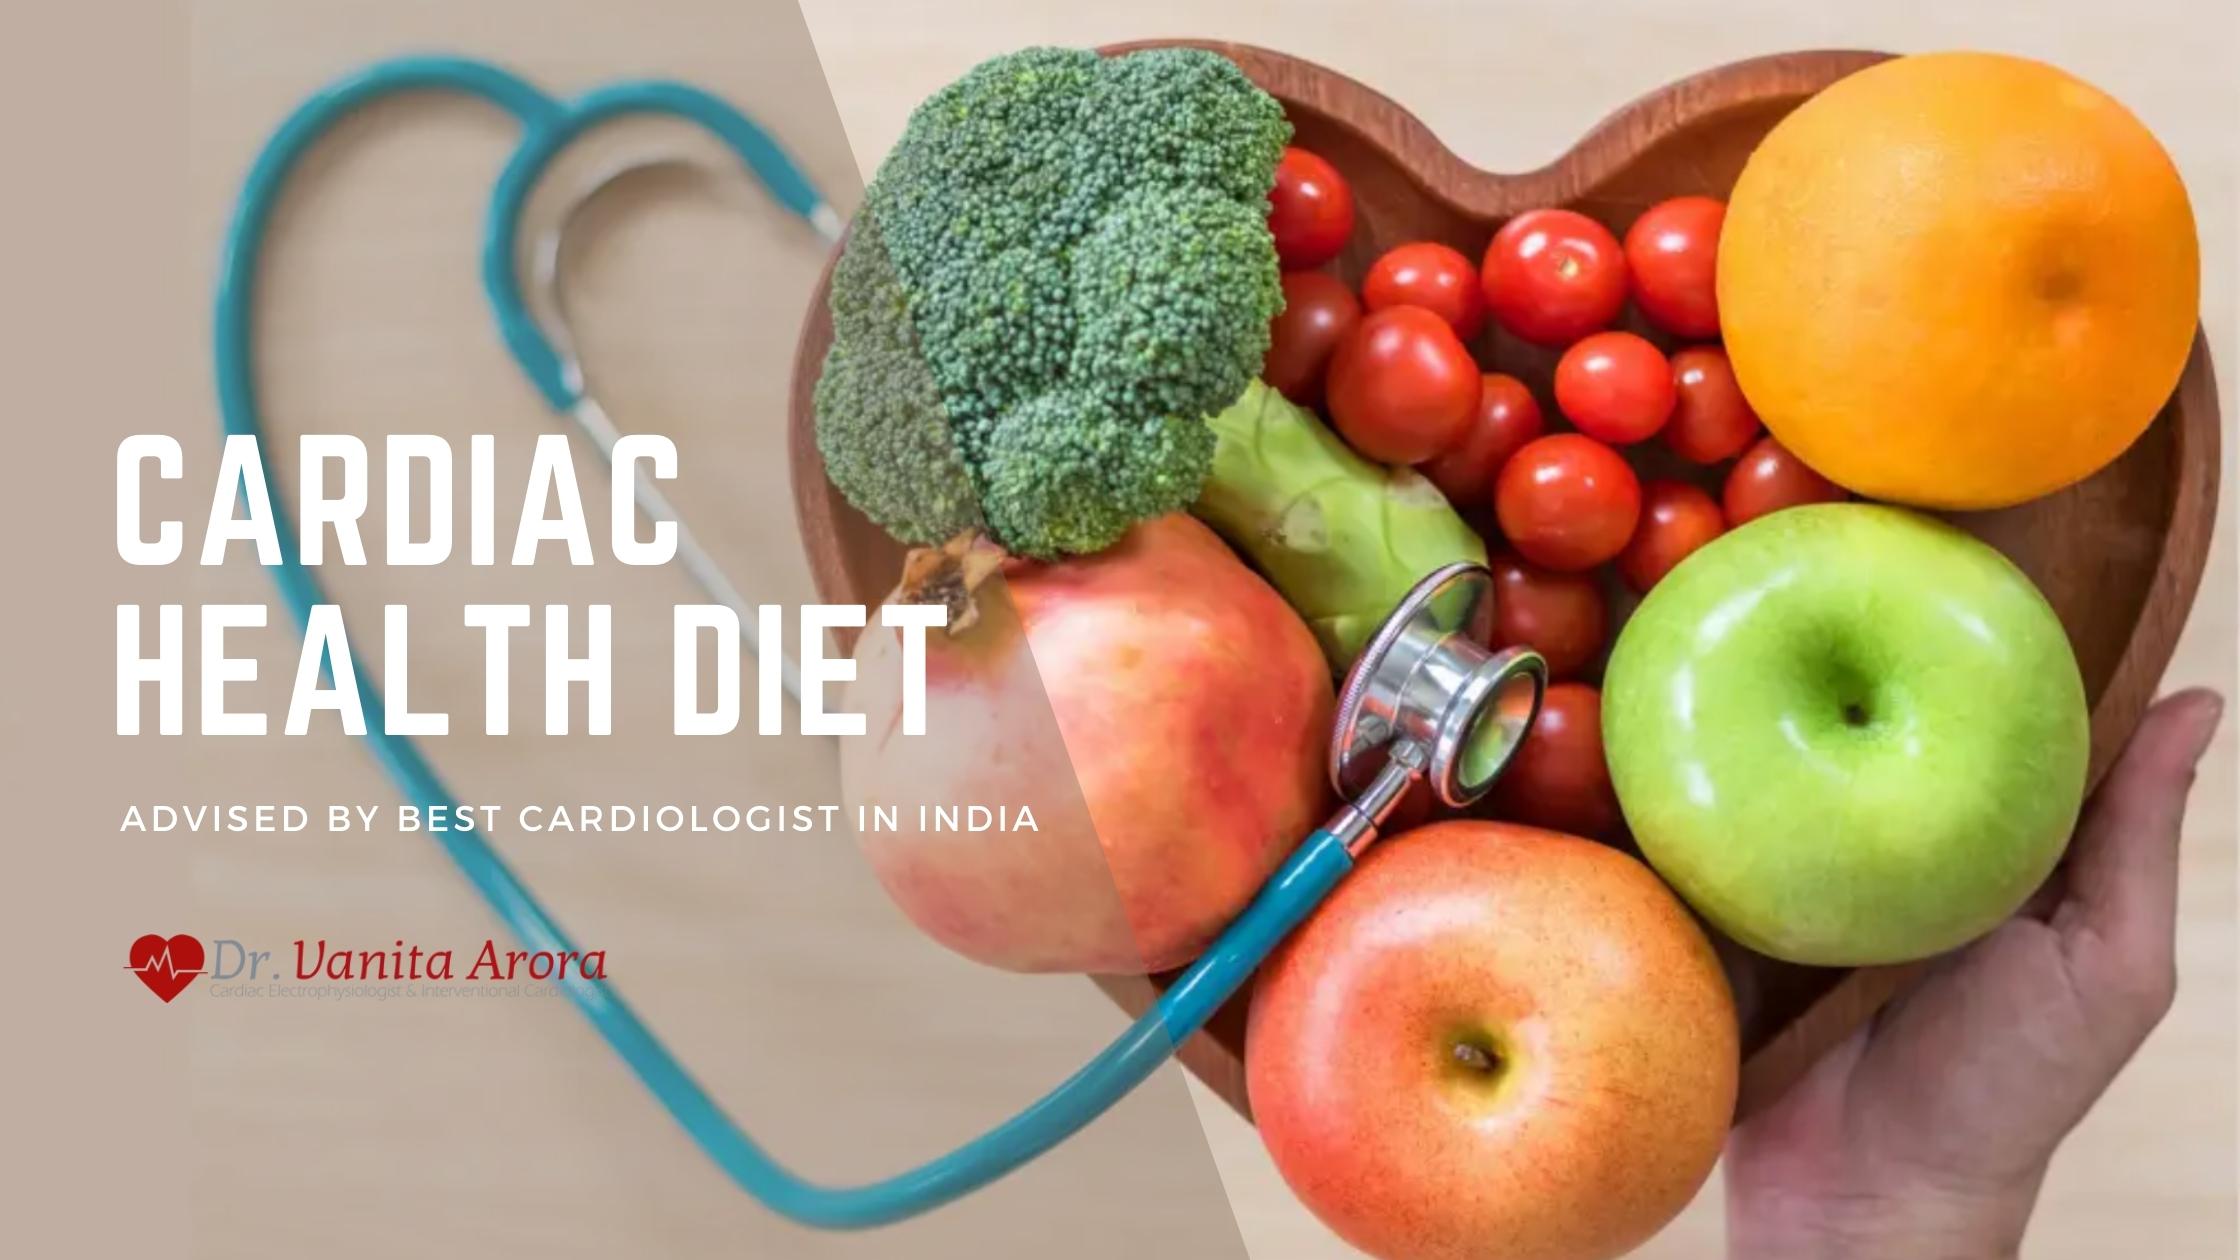 Cardiac Health Diet as Advised by Best Cardiologist - Dr. Vanita